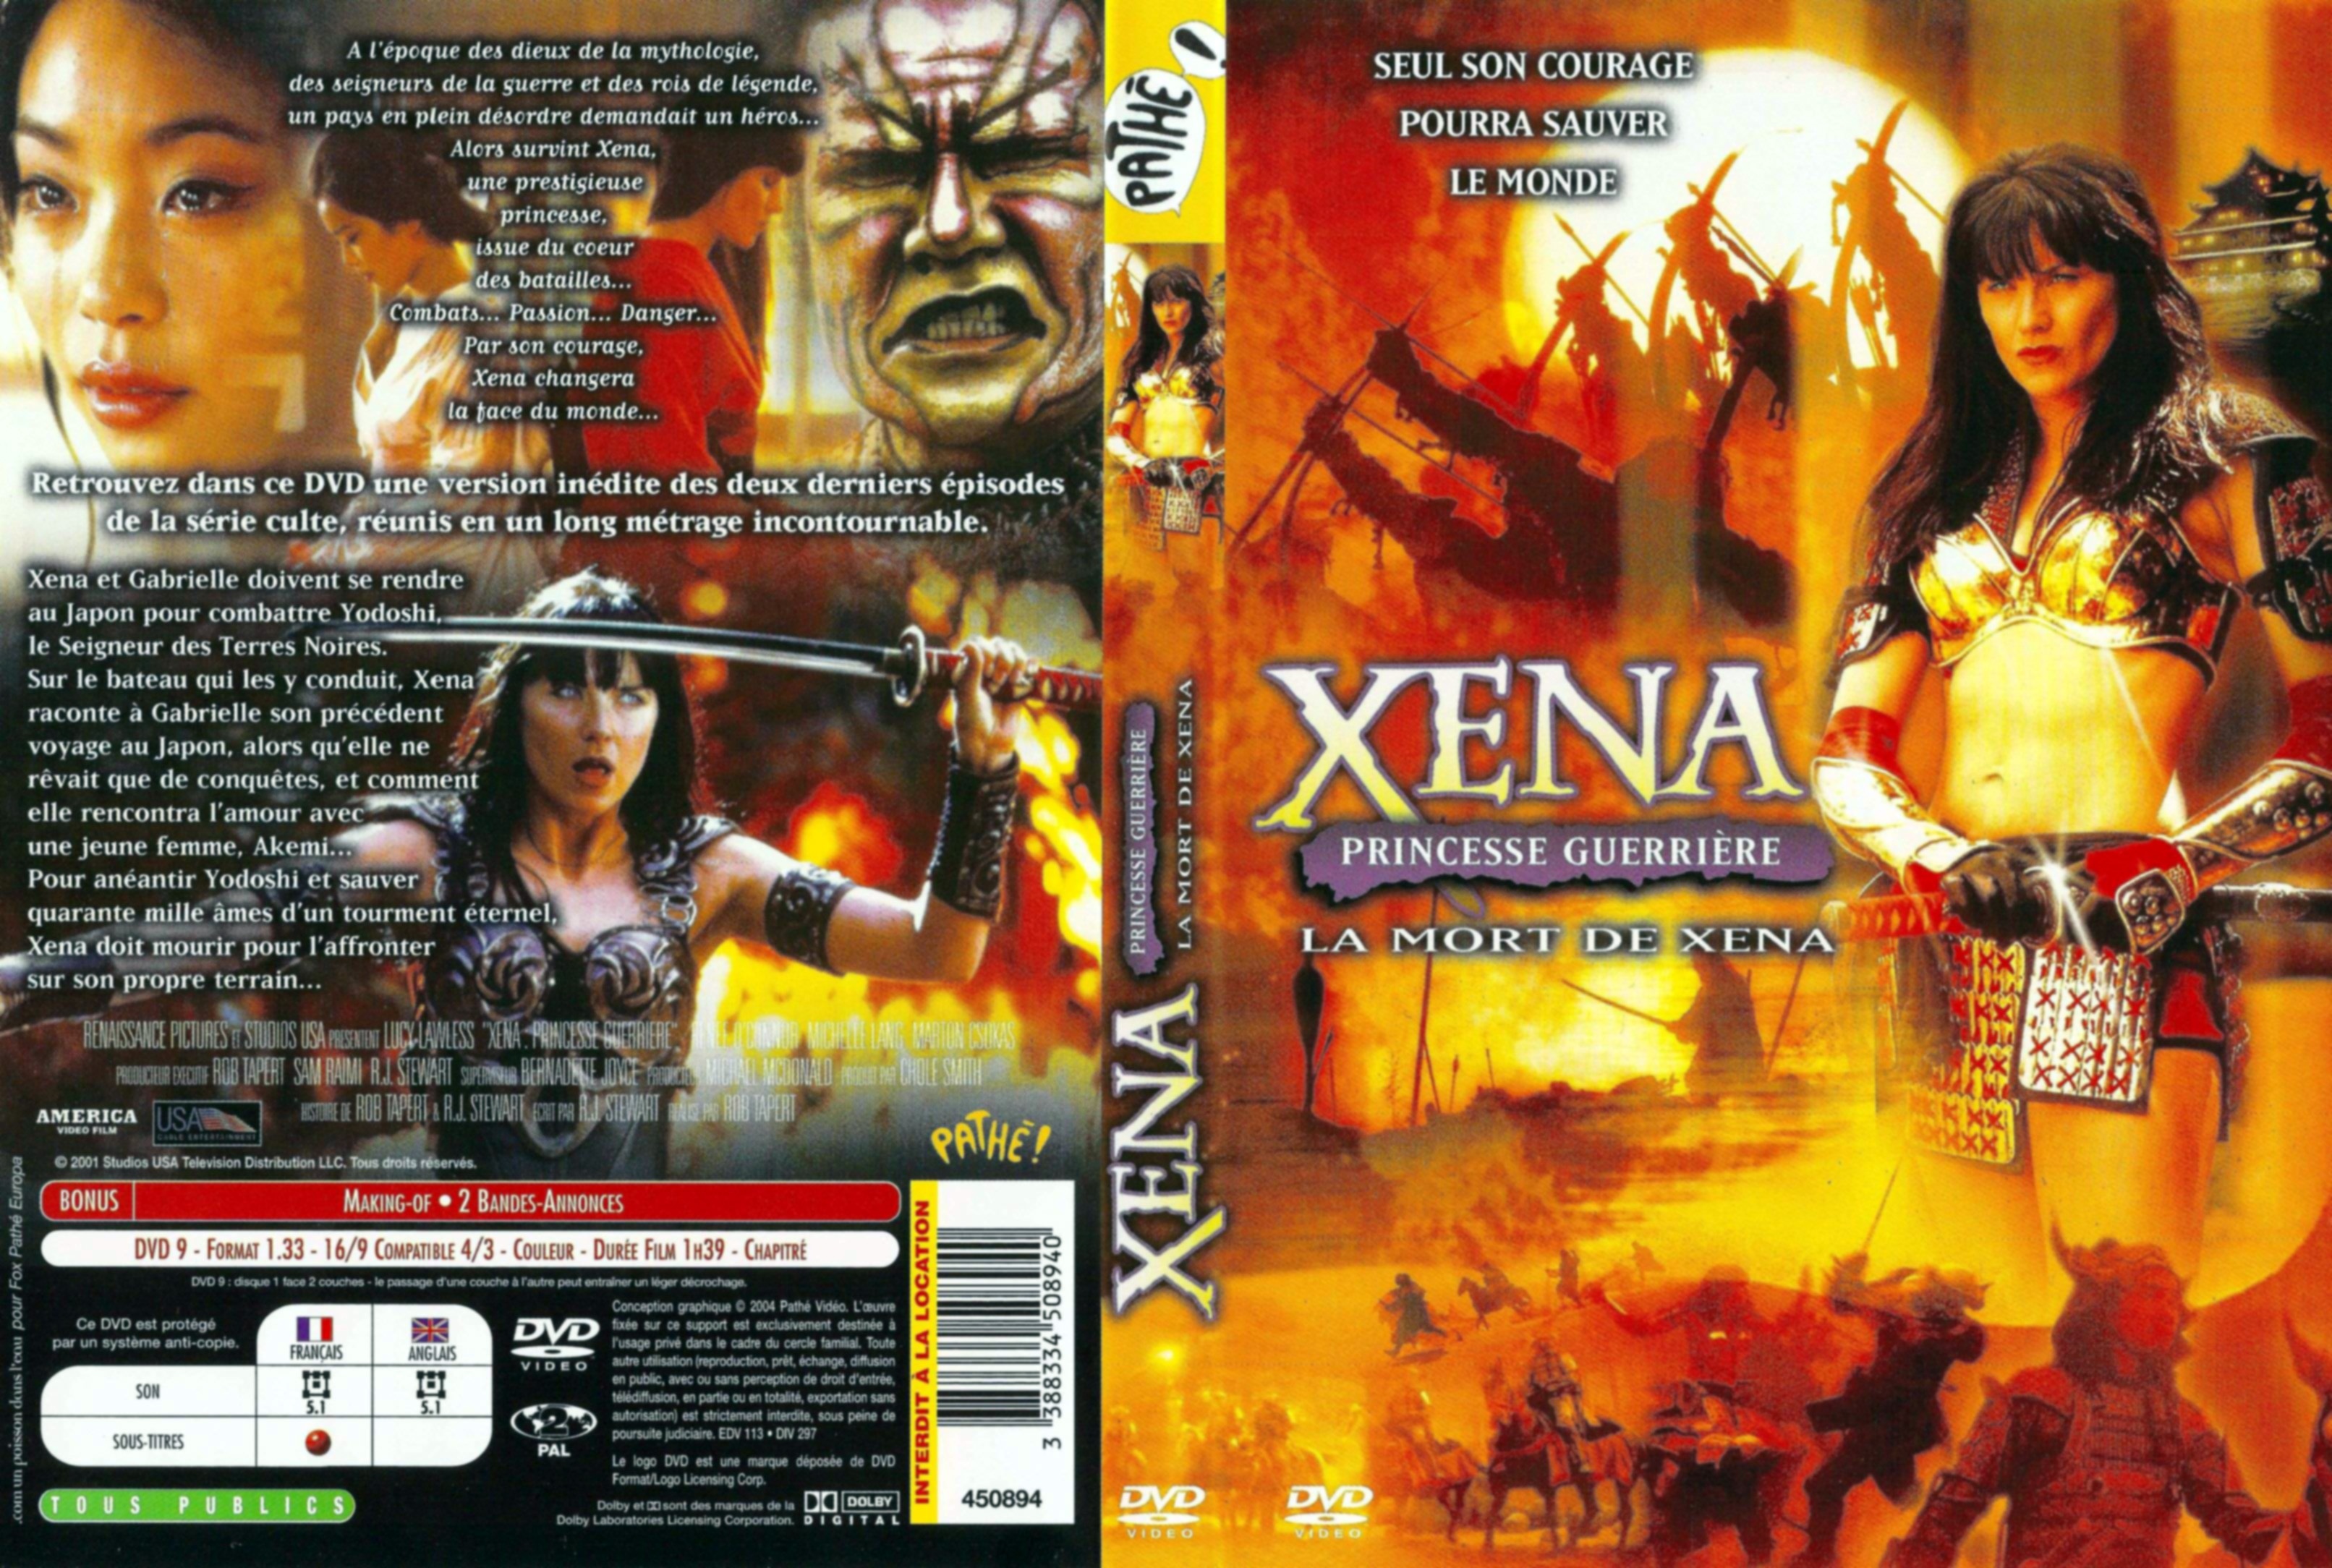 Jaquette DVD Xena princesse guerriere la mort de Xena